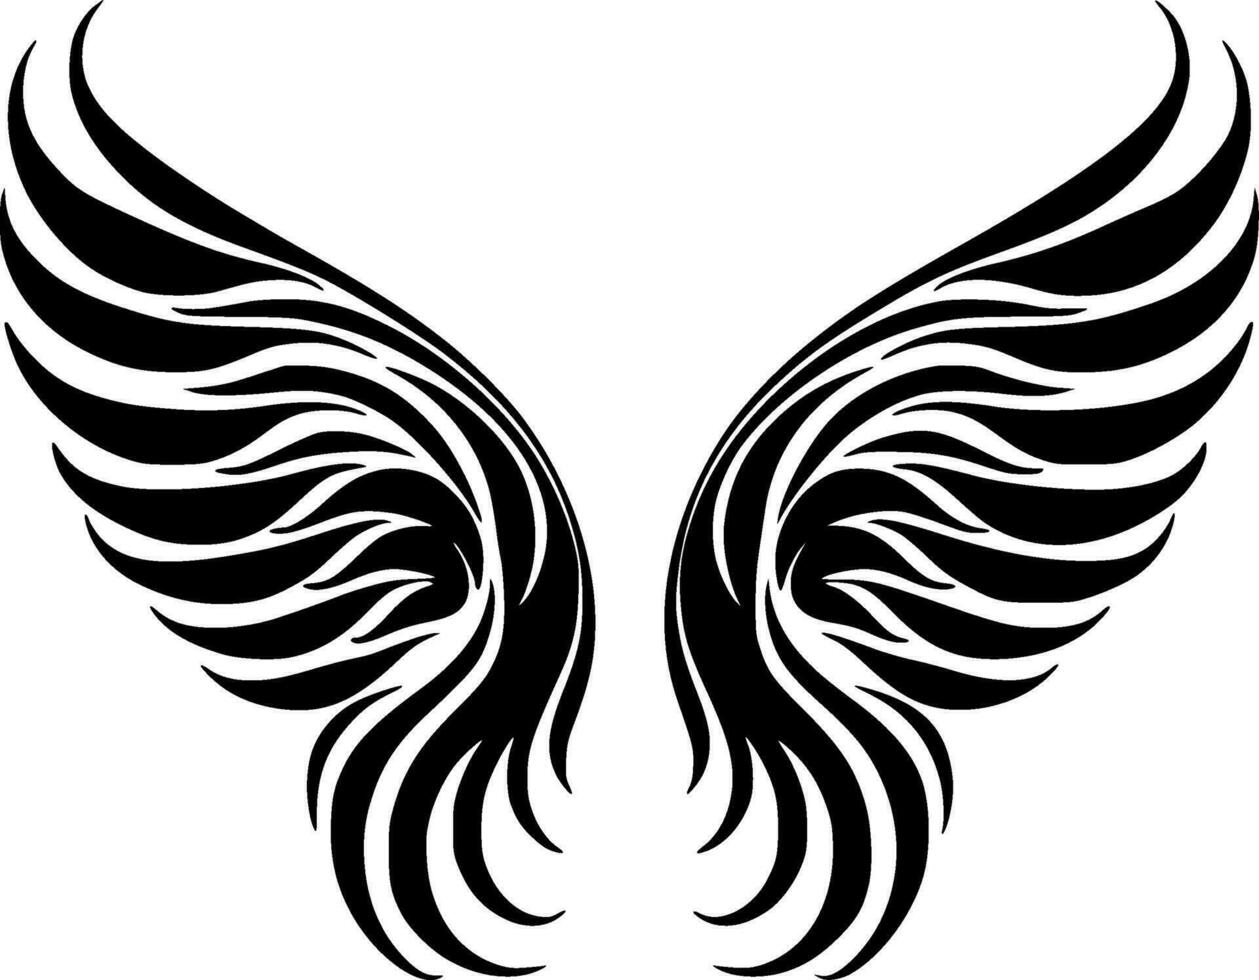 Engel Flügel - - minimalistisch und eben Logo - - Vektor Illustration